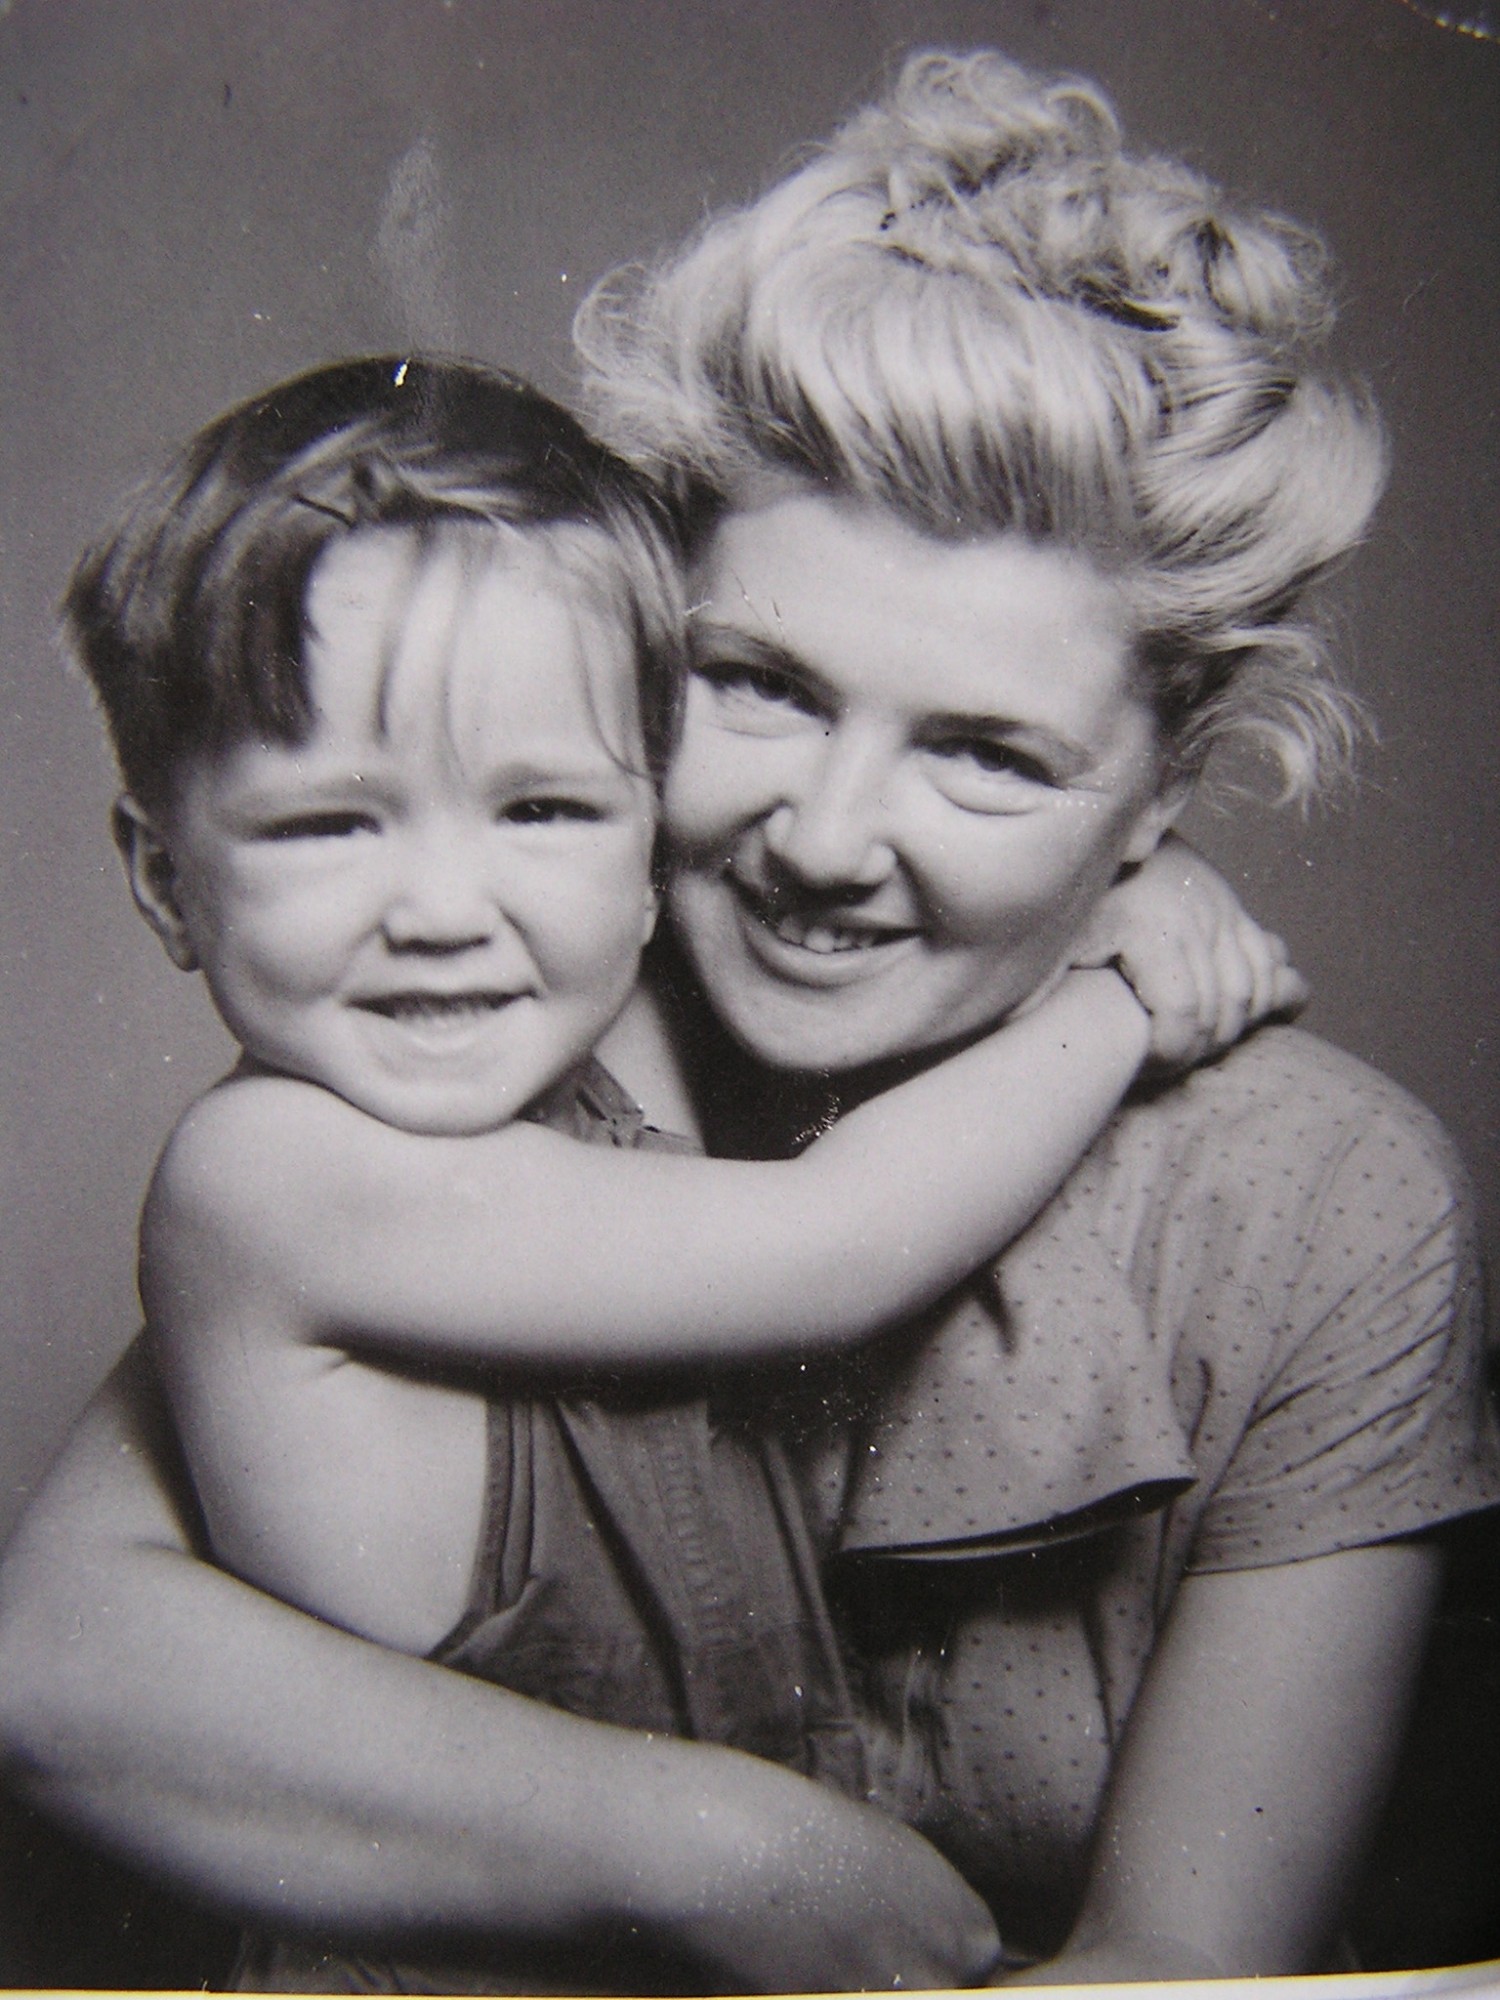 Gaydečková Anita with her son Míťa 1950